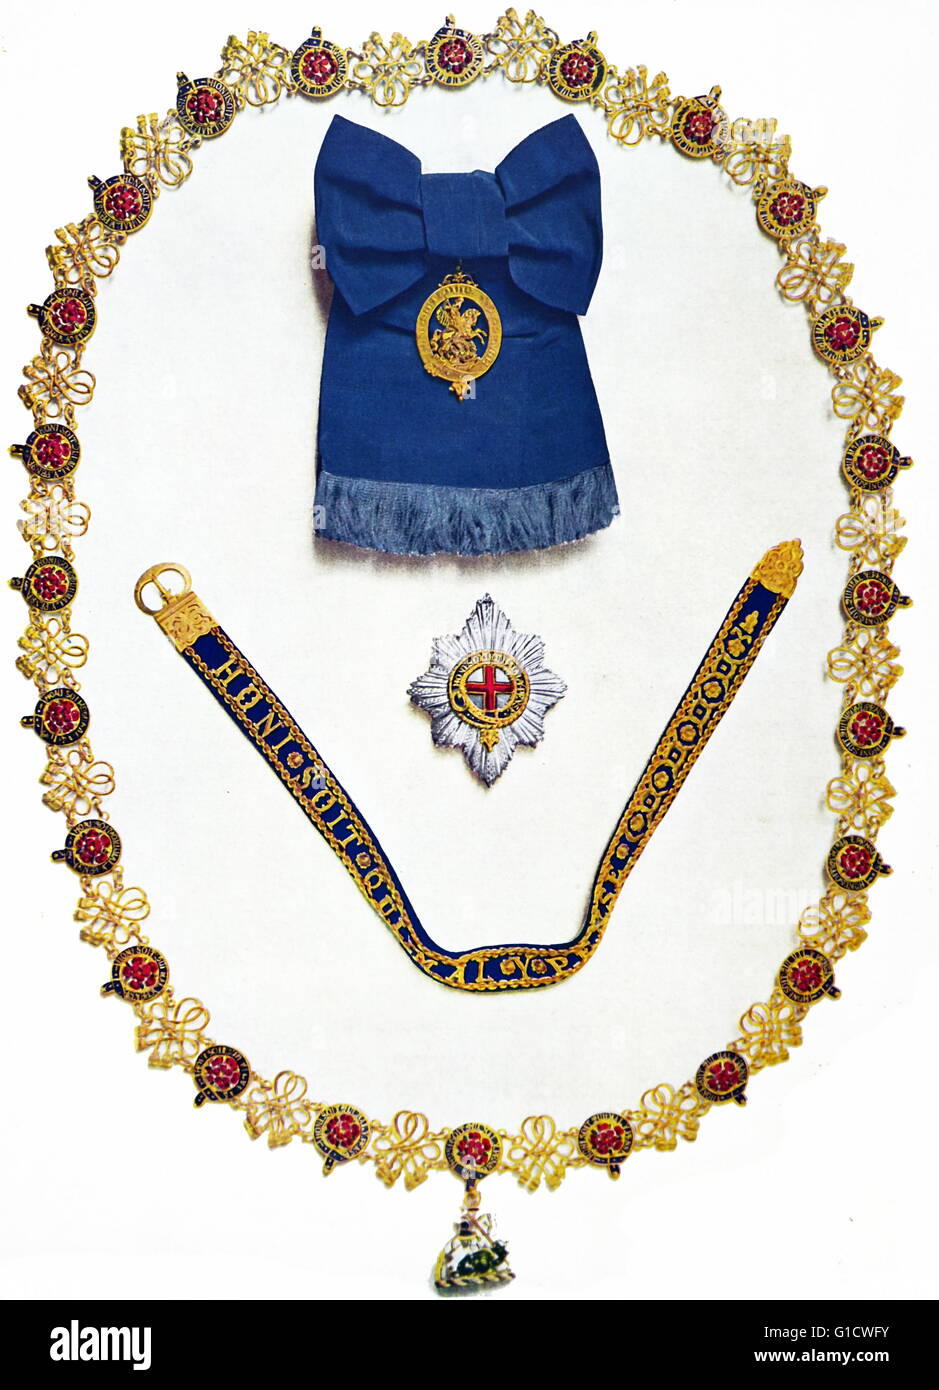 Ordre de la jarretière et d'autres insignes ordersand couronnement porté par le roi George VI à son couronnement et Roi britannique en 1937 Banque D'Images